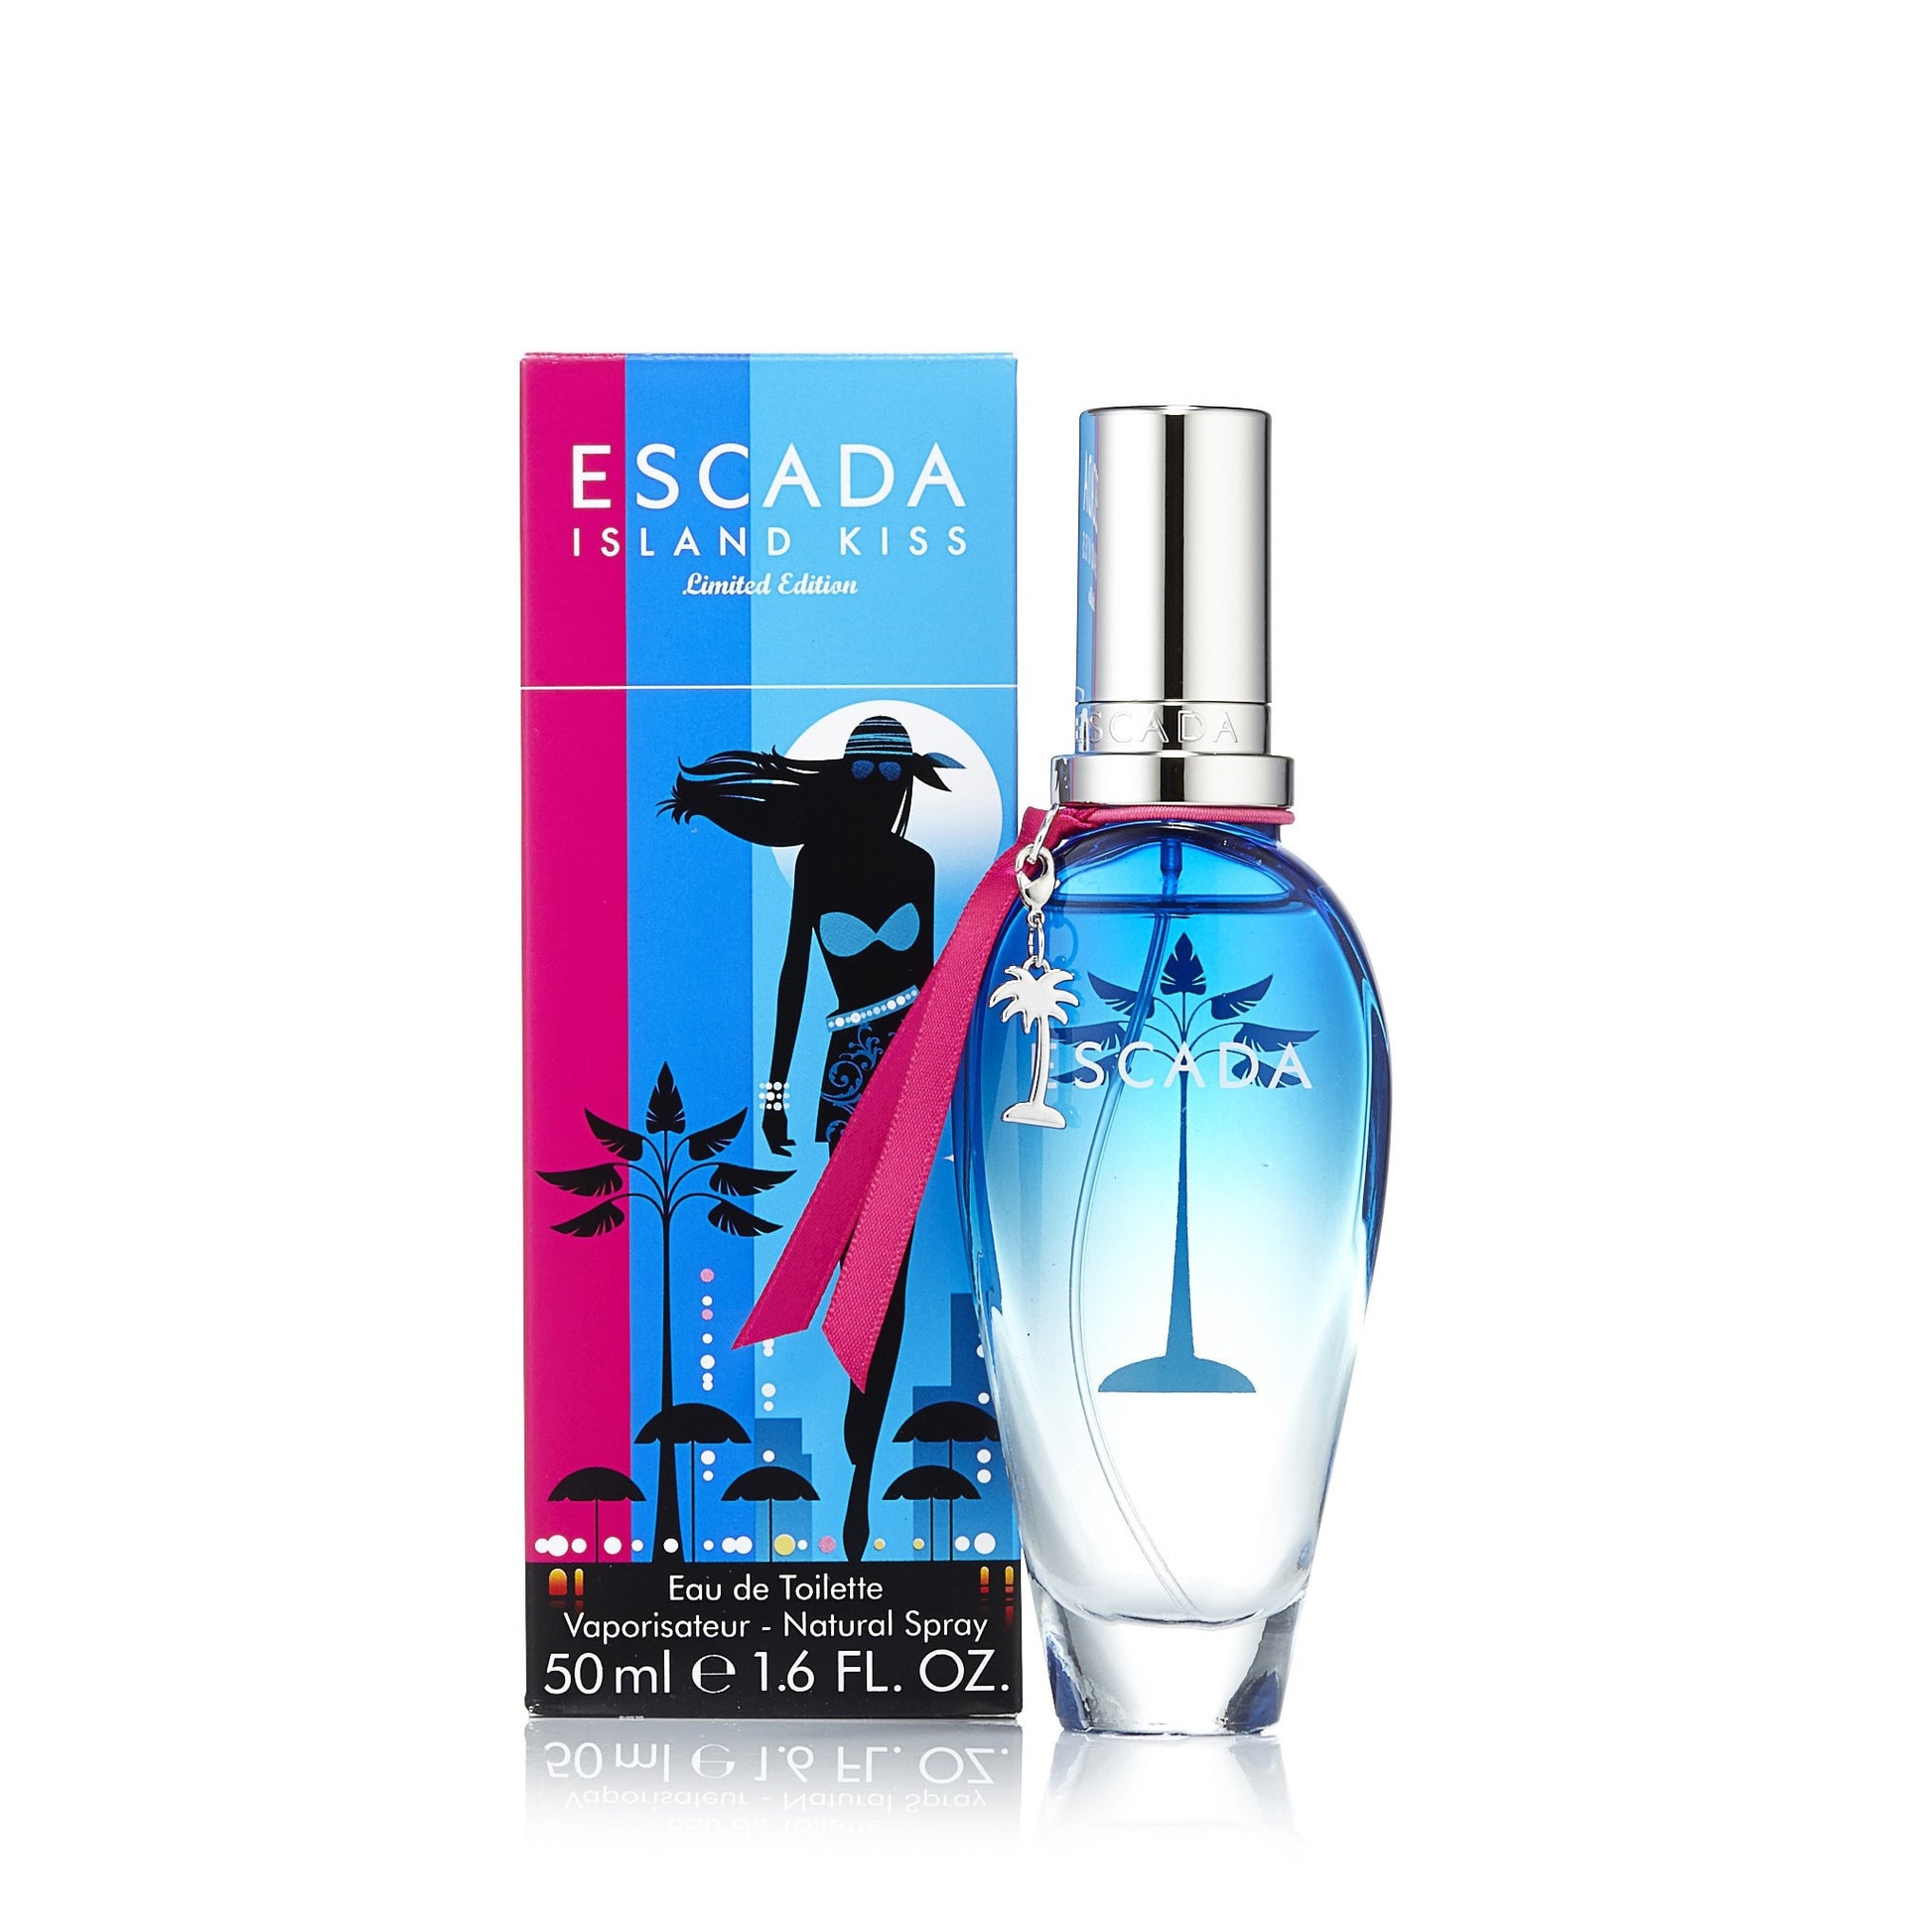  Island Kiss Eau de Toilette Spray for Women by Escada 1.6 oz. Click to open in modal